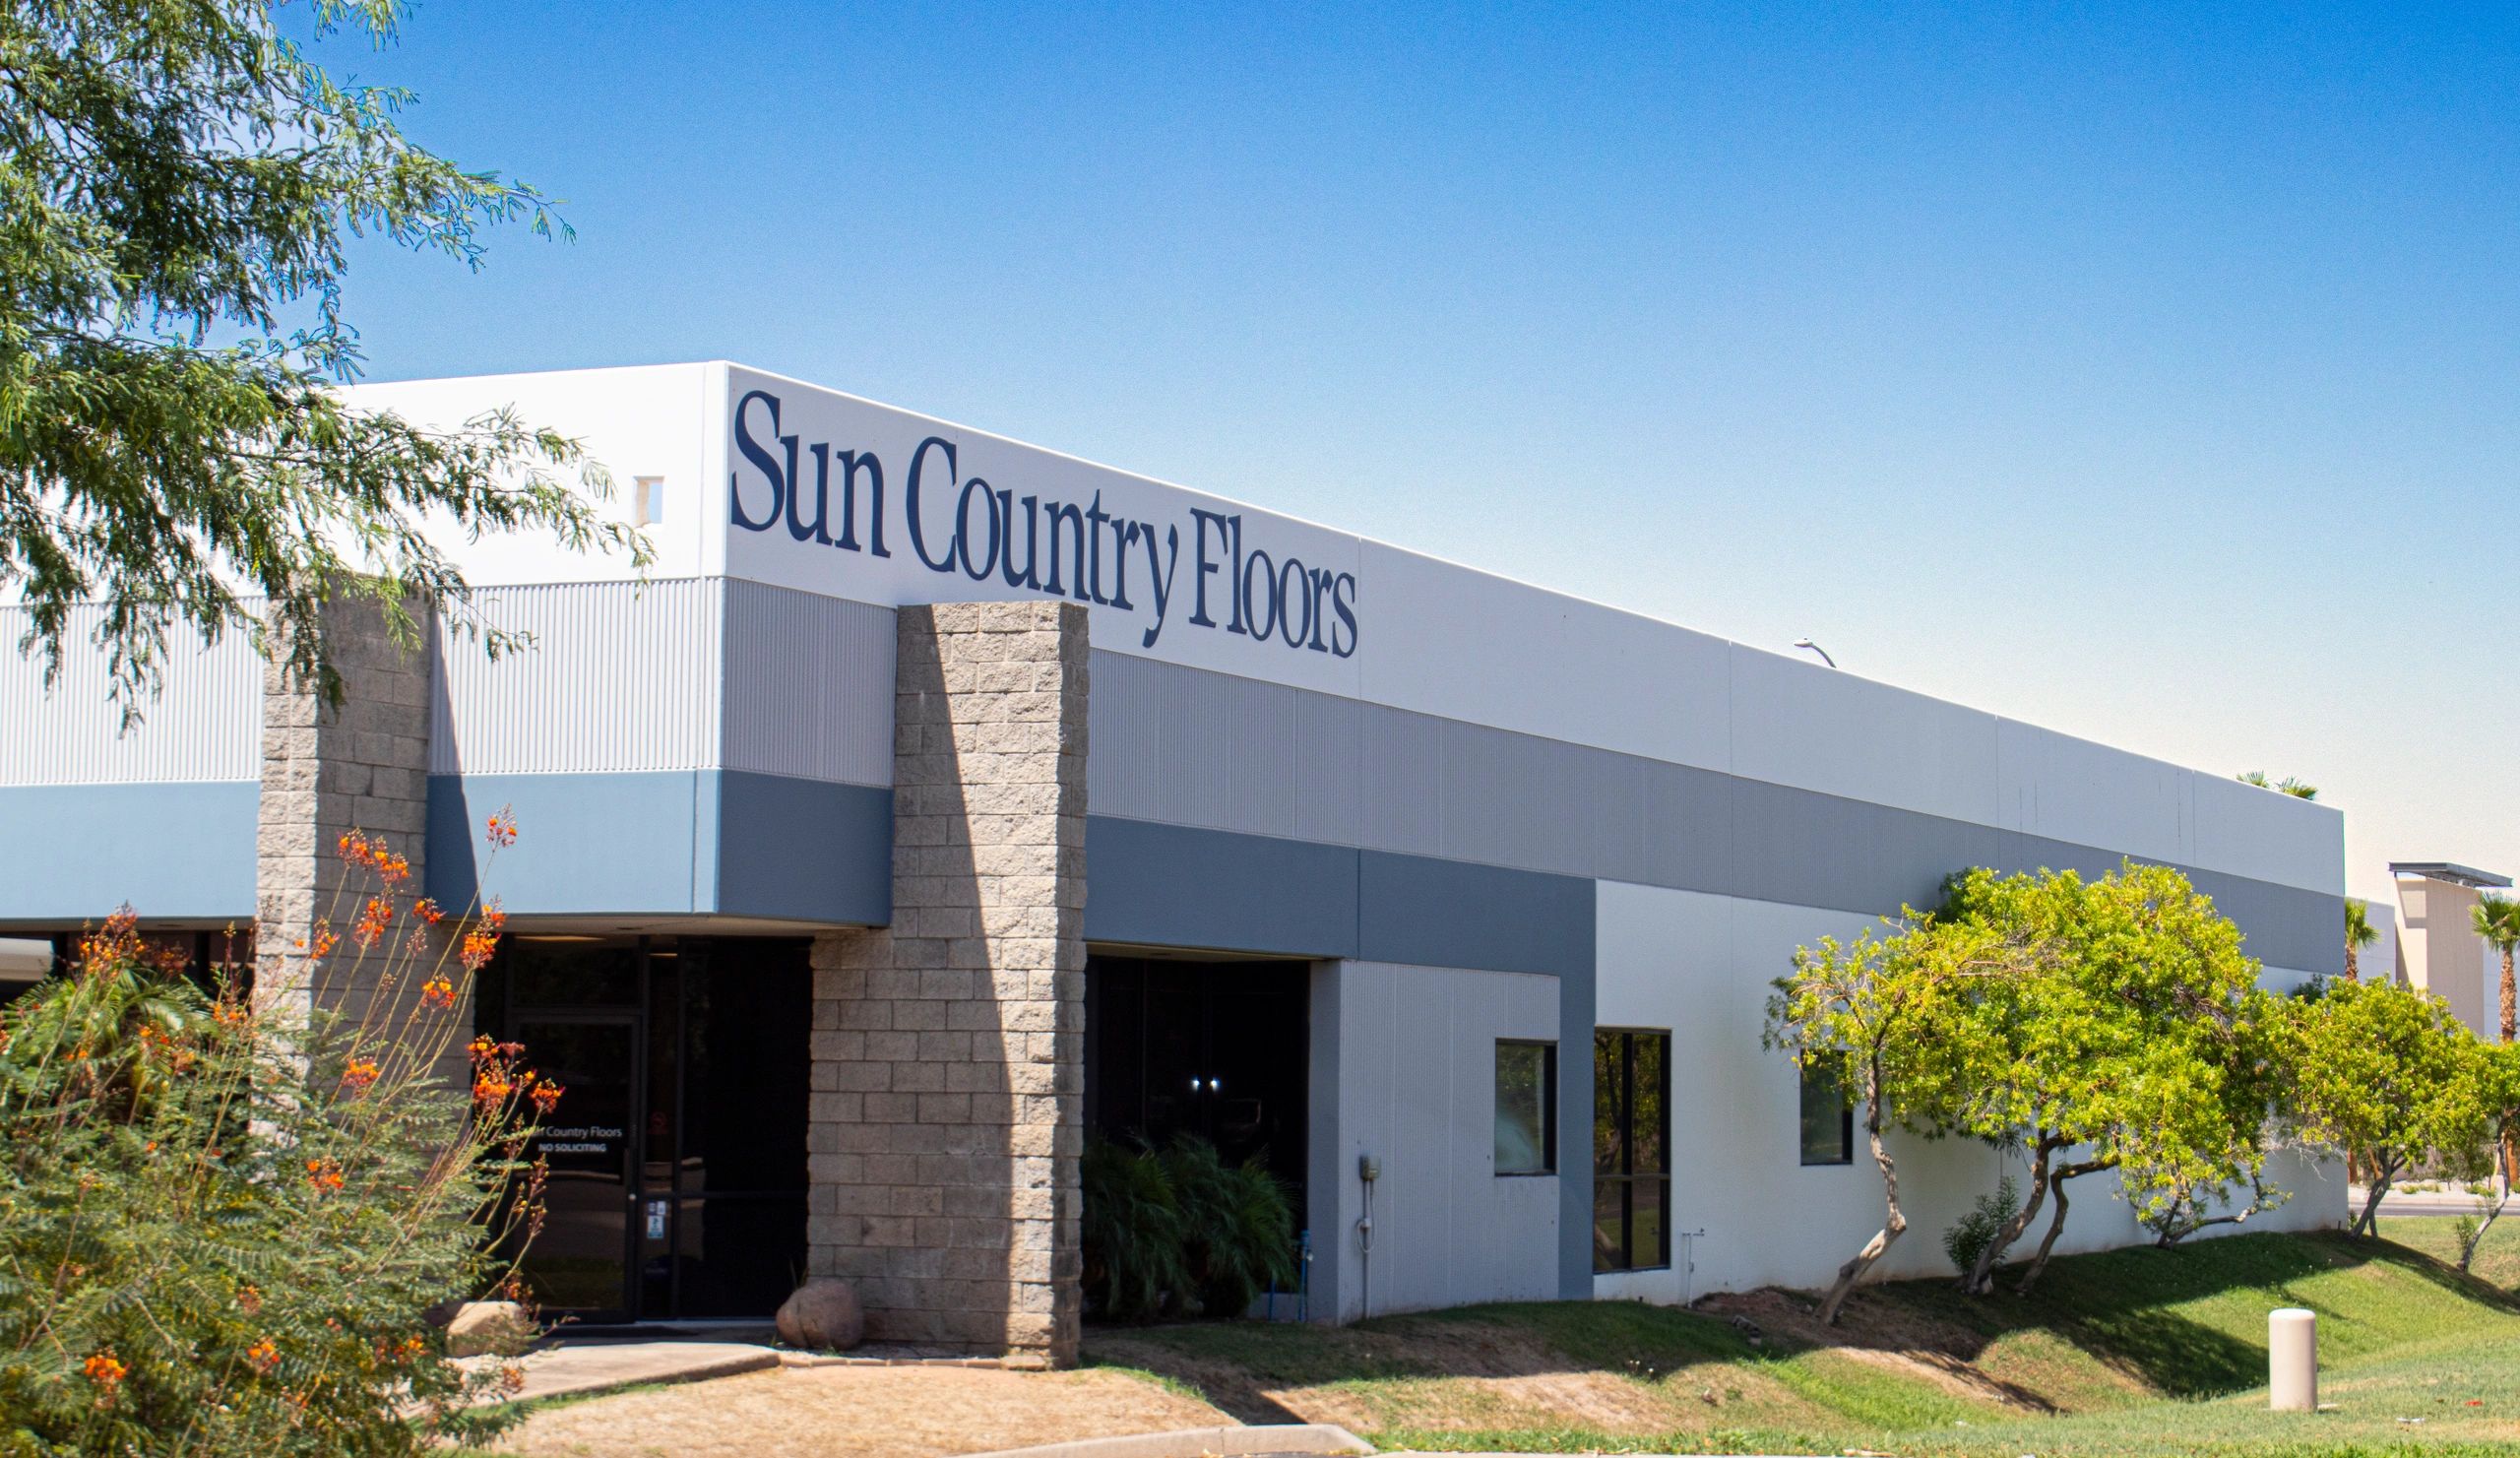 Sun Country Floors Office in Mesa, AZ